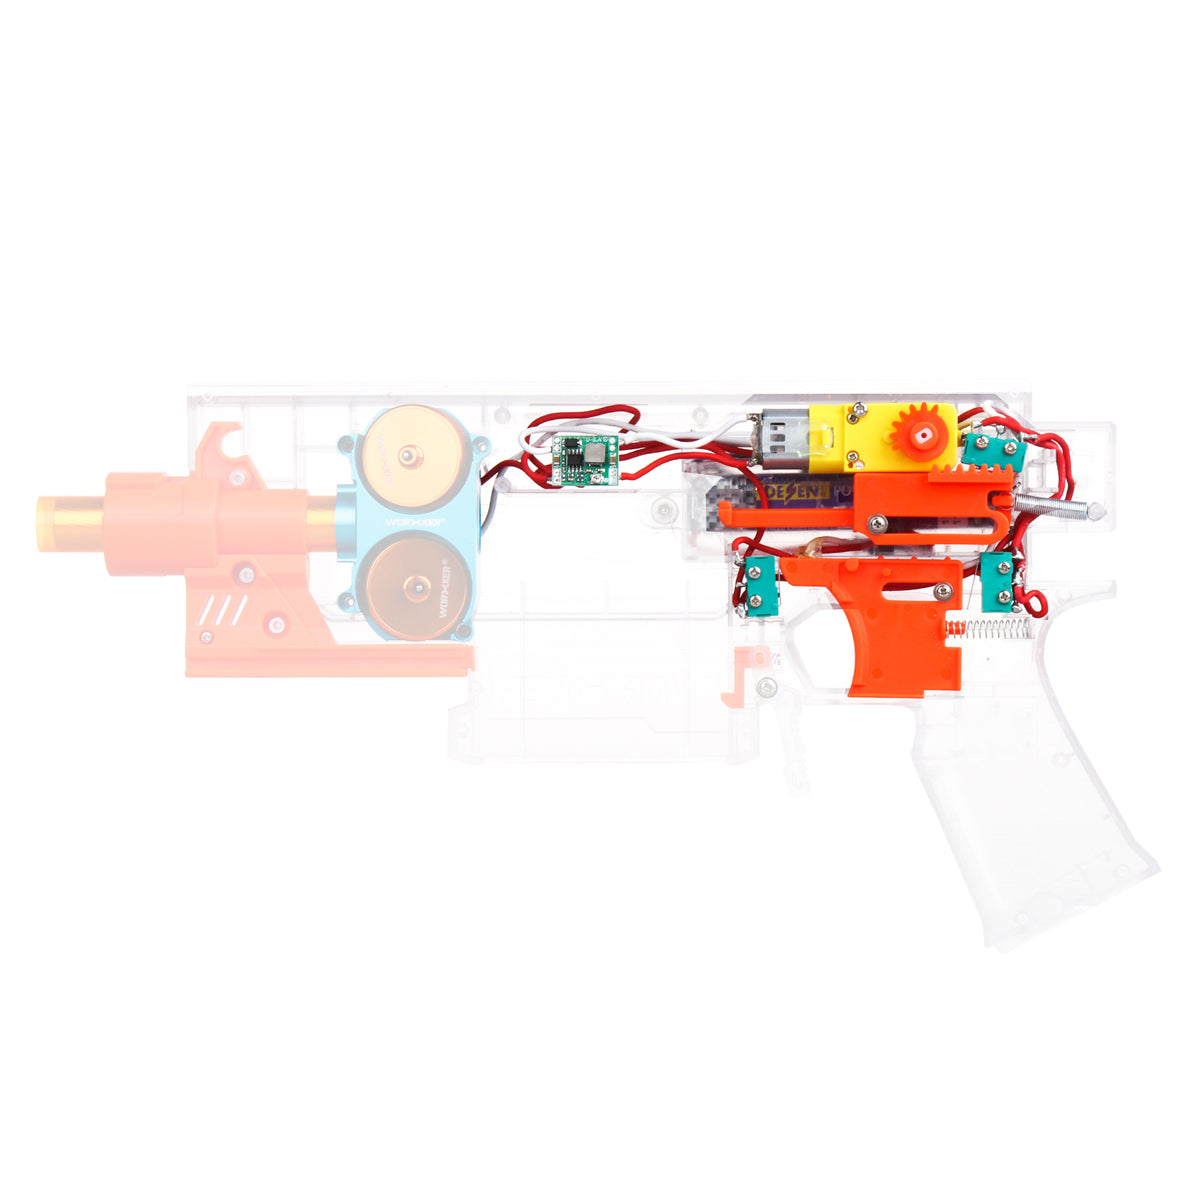 Worker Mod Swordfish Automatic Kits Semi/Full Auto Modified Kits for Worker Mod Swordfish Blaster Toy - BlasterMOD